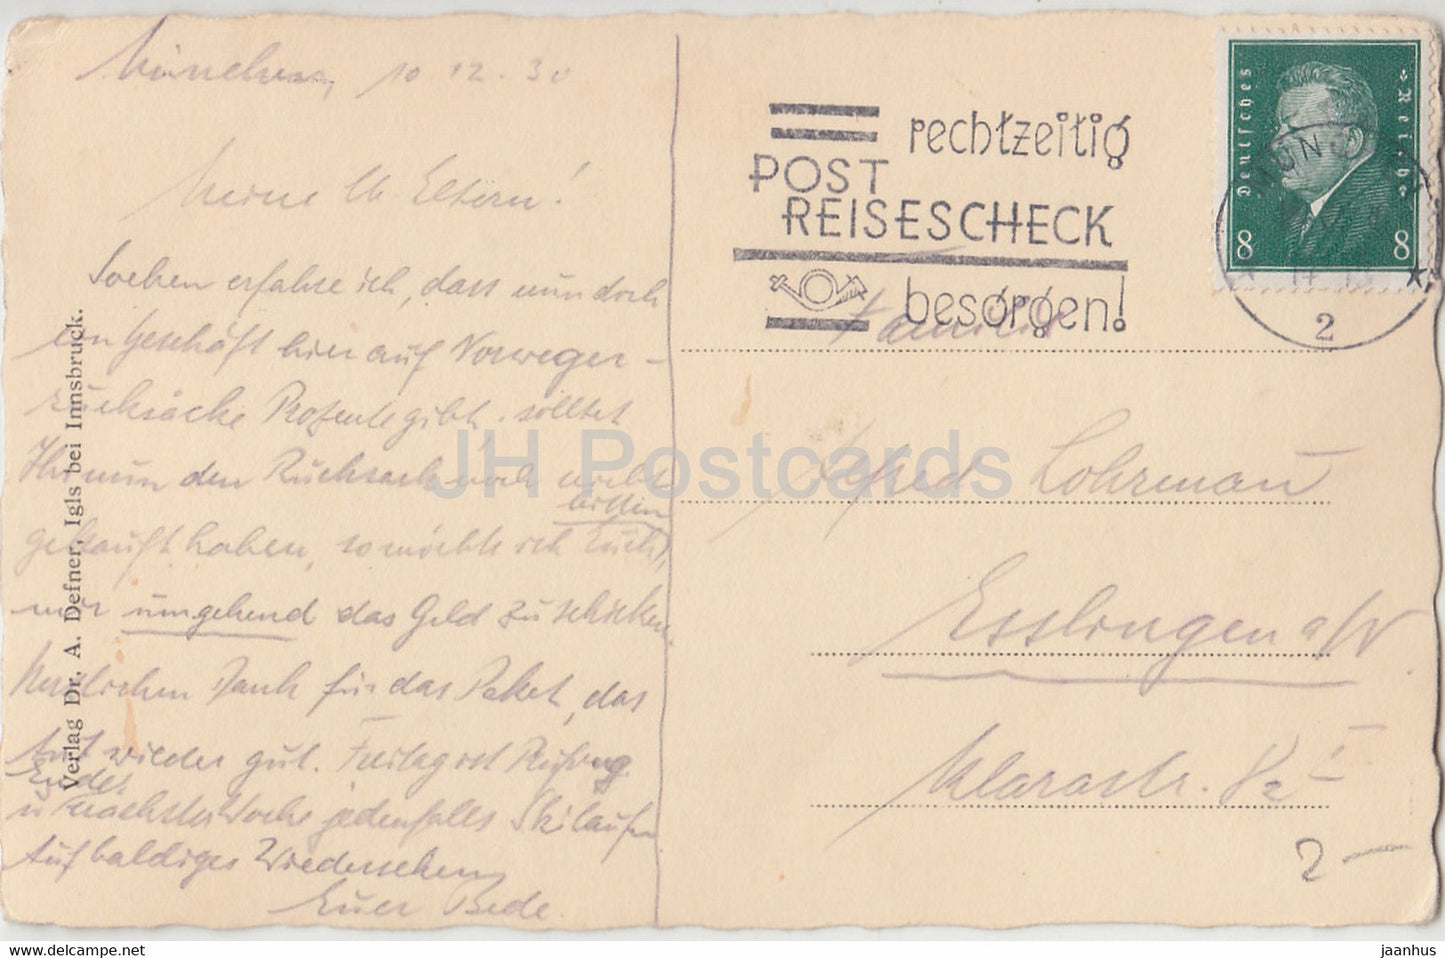 Blumen - Narzisse - A. Defner - alte Postkarte - 1930 - Österreich - gebraucht